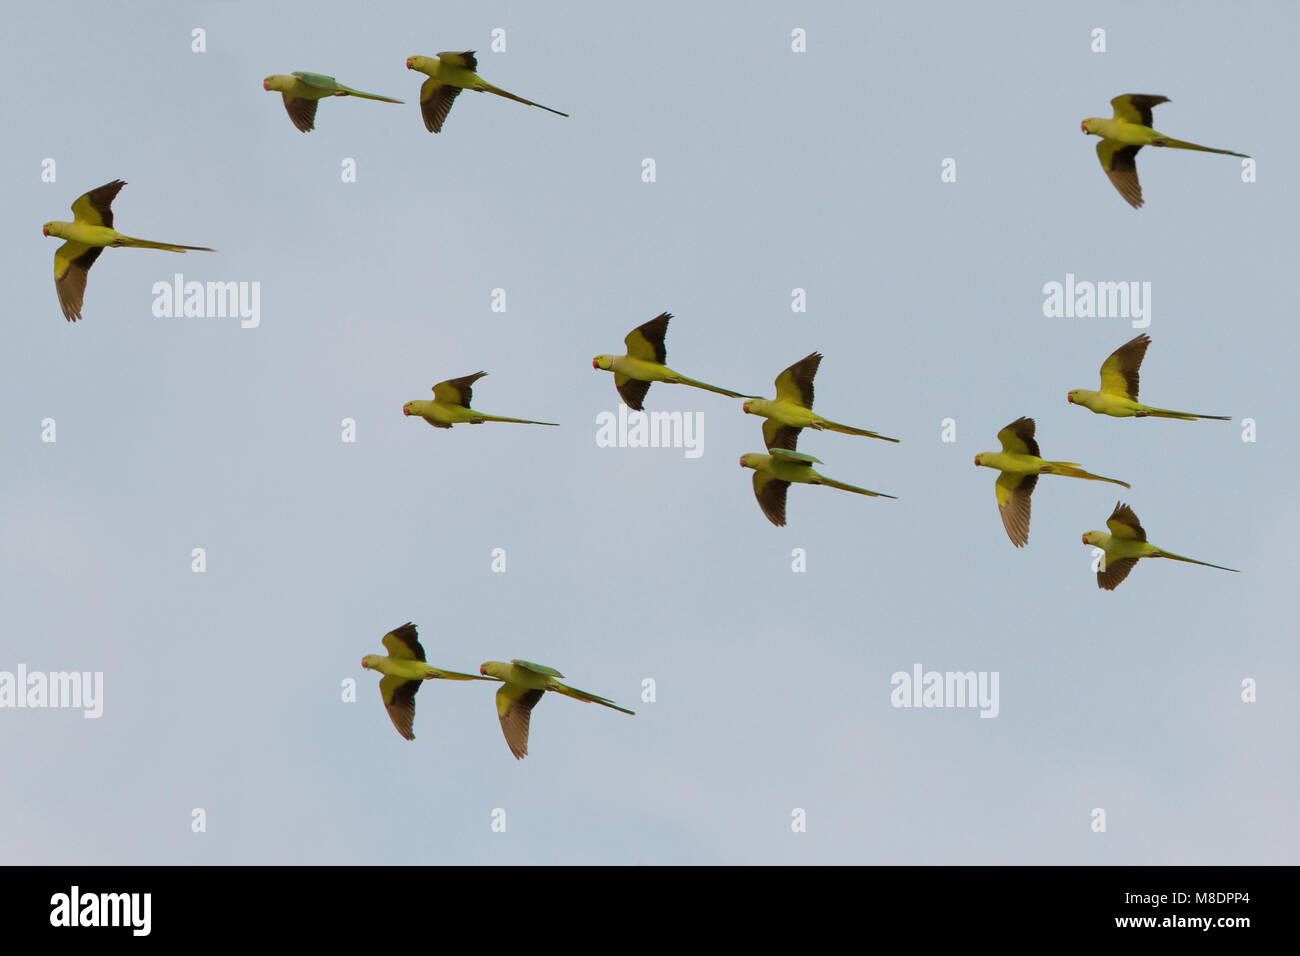 Groep vliegende Halsbandparkieten; Group of flying Rose-ringed Parakeets Stock Photo